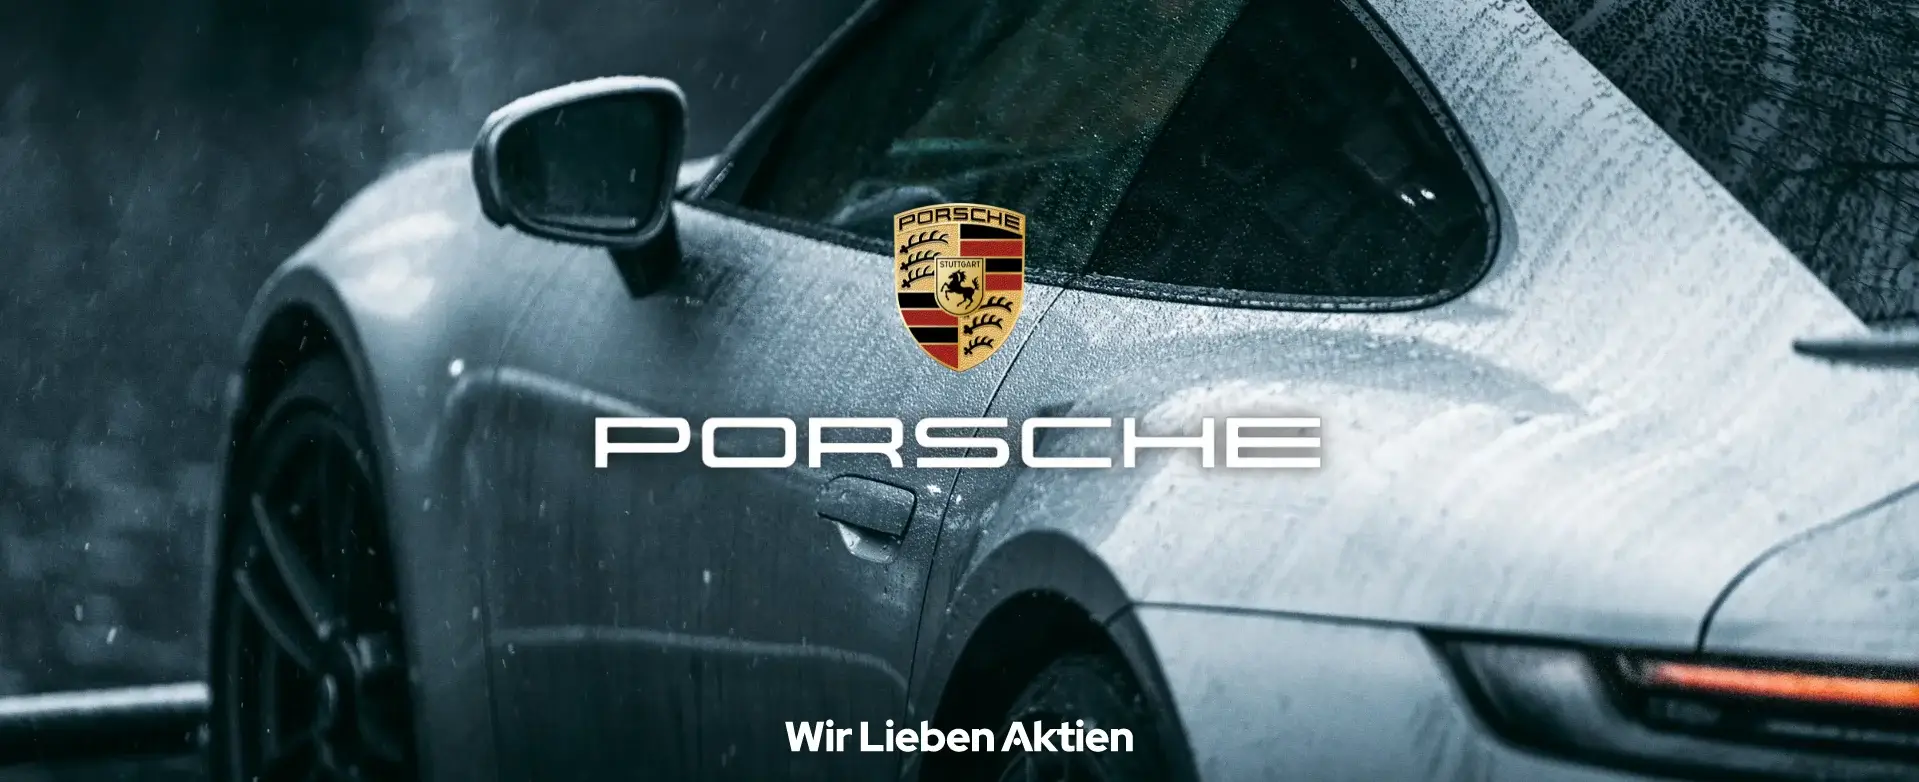 Porsche Aktie Prognose und Analyse Einleitung